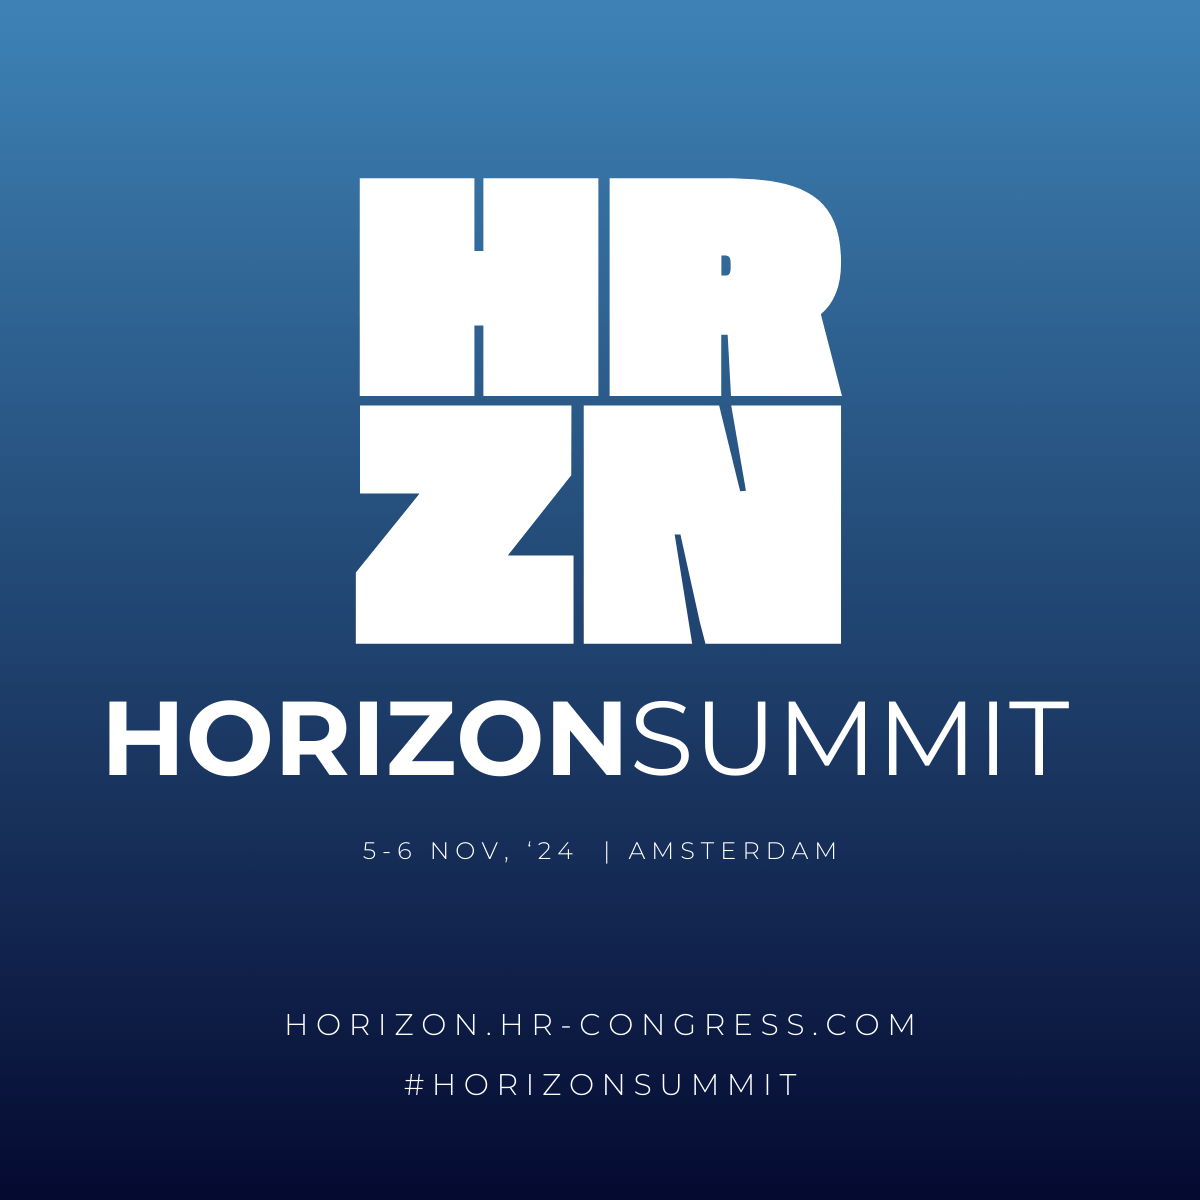 HORIZON SUMMIT 2024 The HR Congress Event Tickets